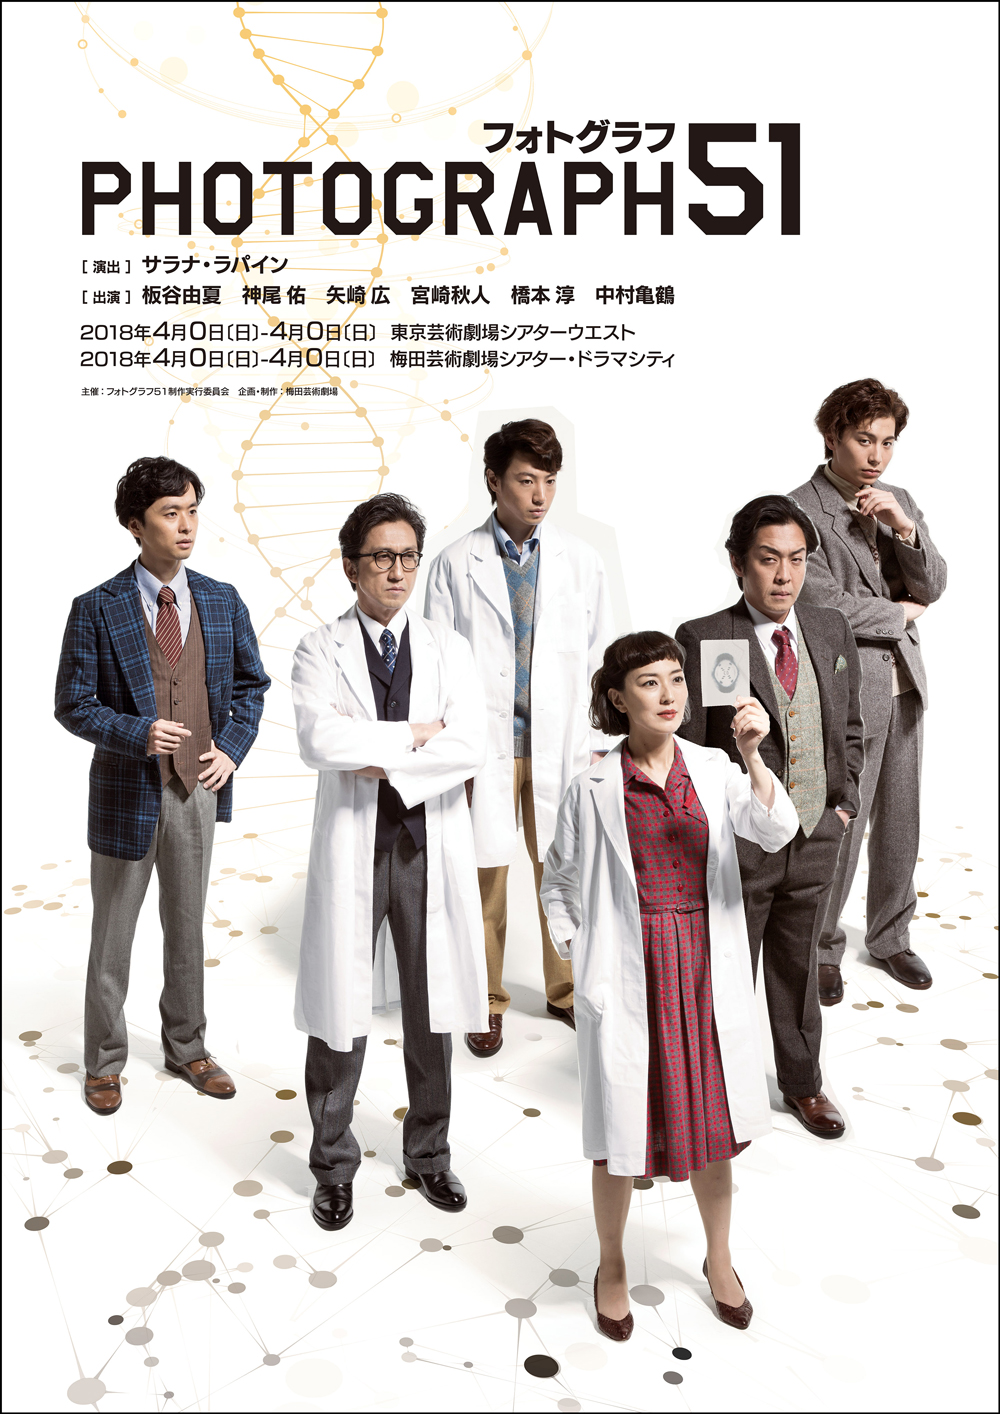 亀鶴が舞台『PHOTOGRAPH51』出演